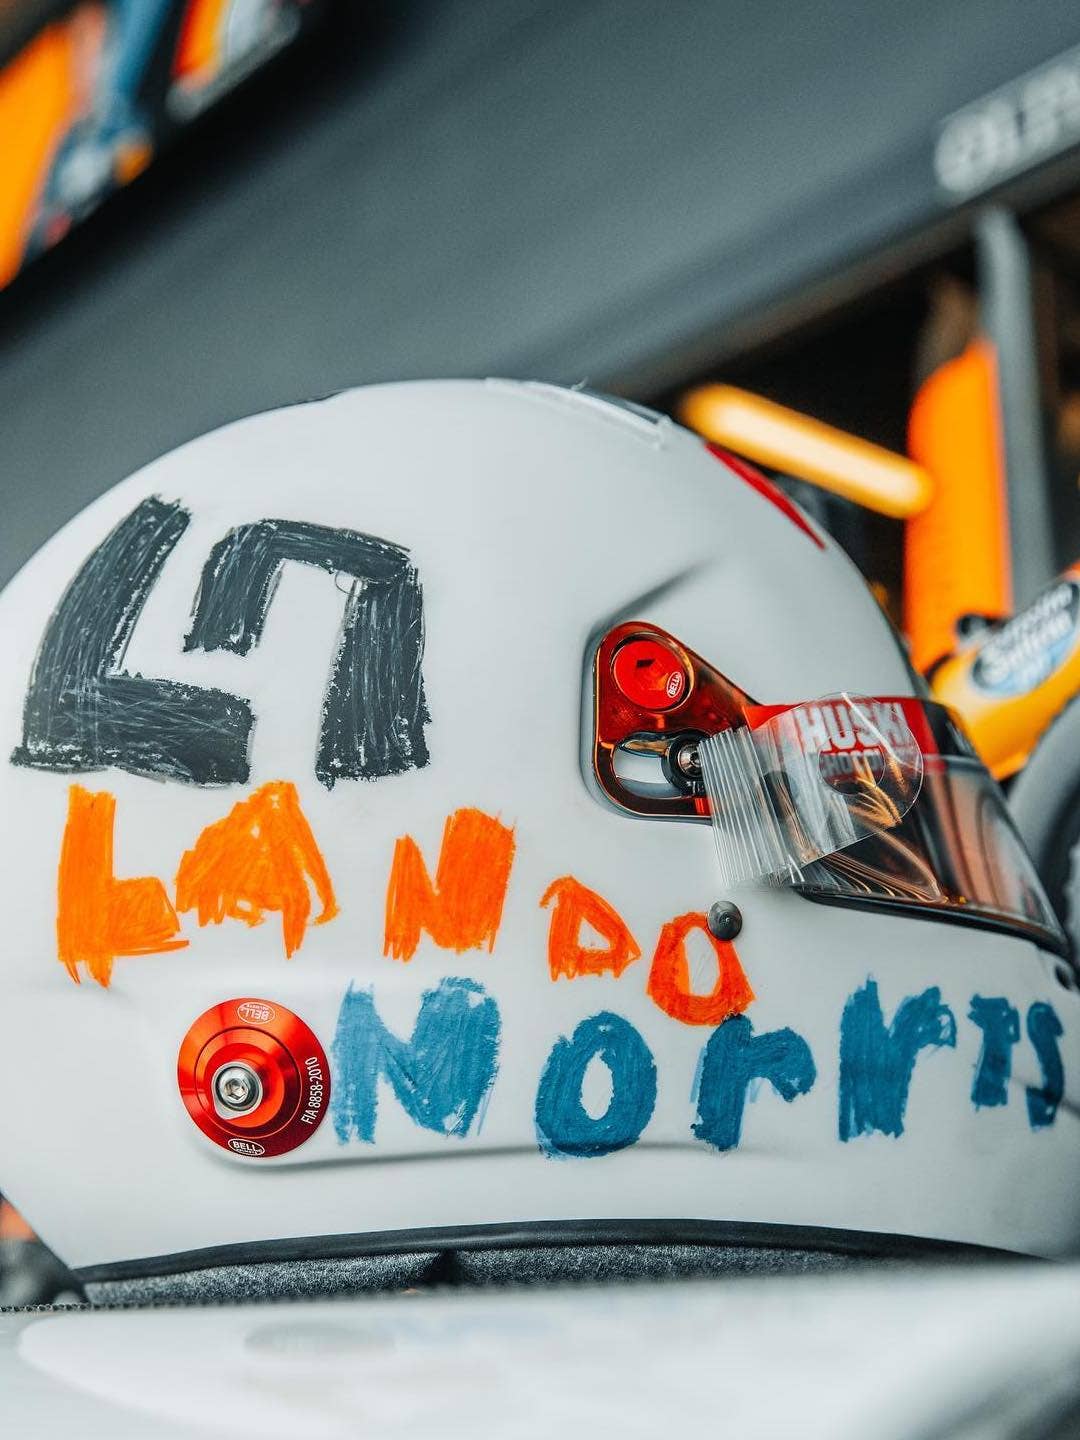 2020 British Grand Prix special helmet for Lando Norris